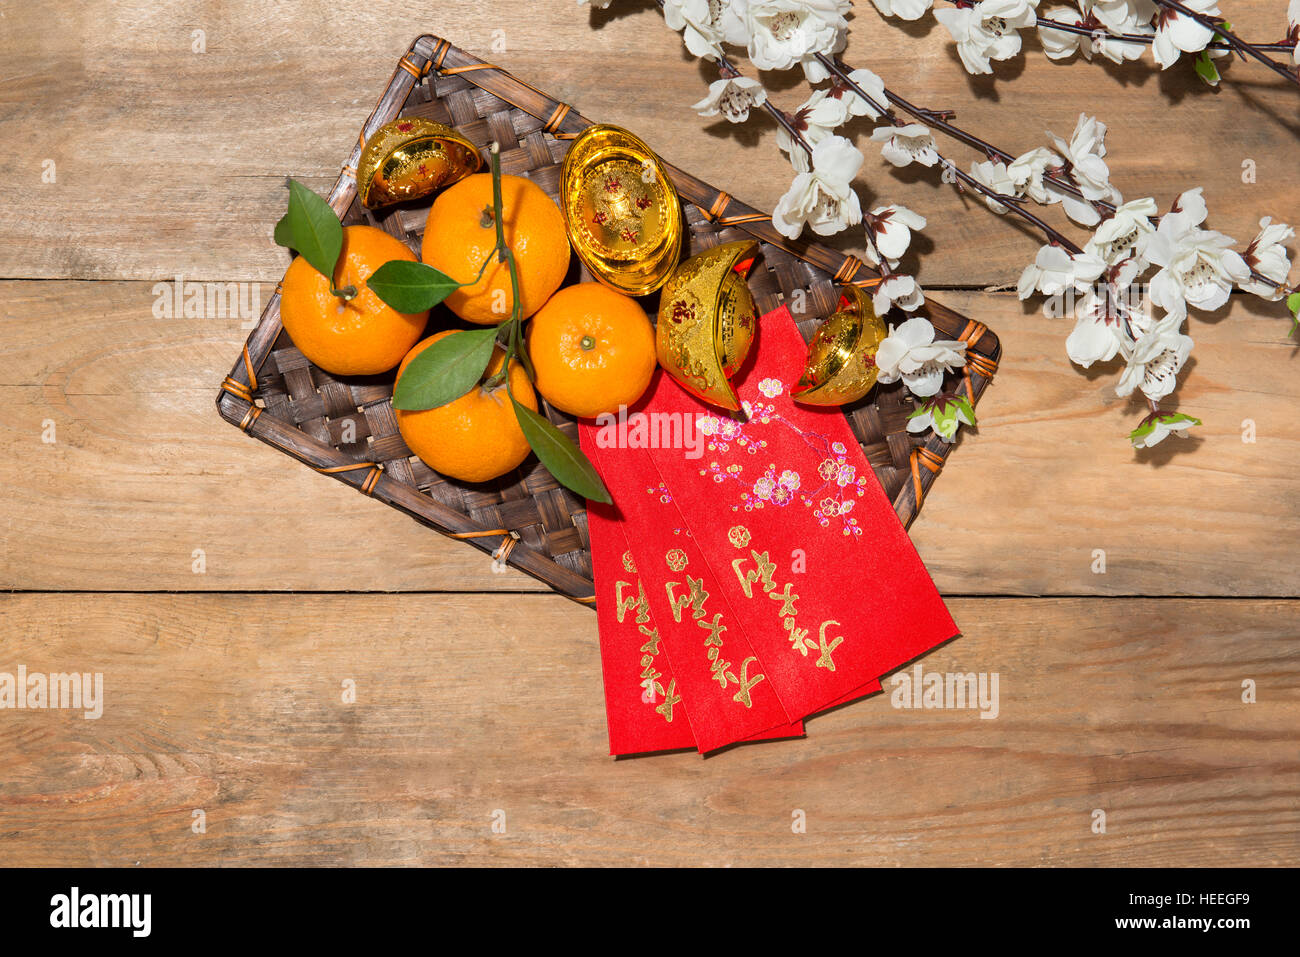 Mandarinas y Año Nuevo Lunar con el texto "Feliz Año Nuevo" en rojo en el bolsillo. Concepto de vacaciones Tet. Texto significa suerte y felicidad. Foto de stock